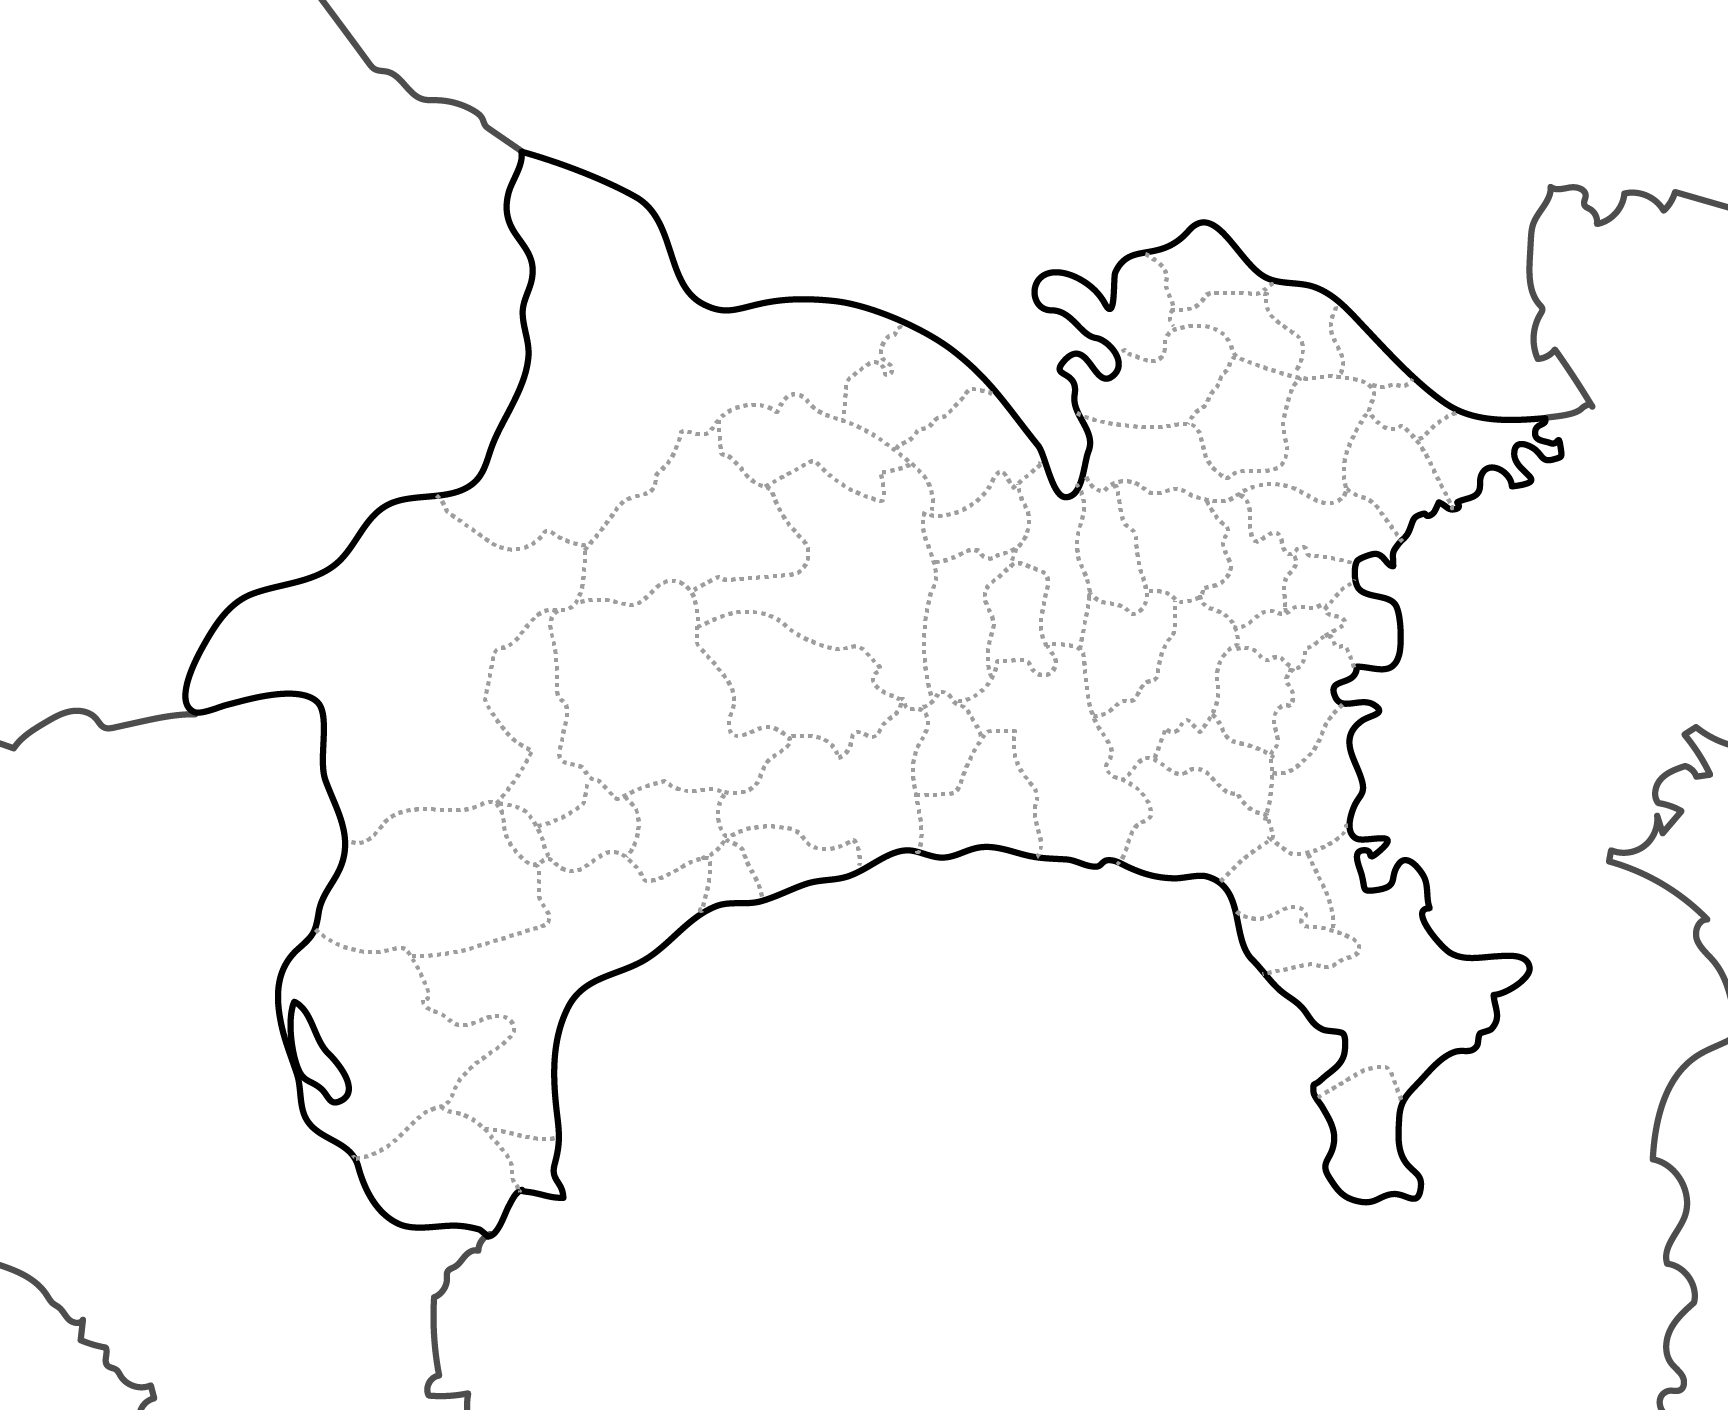 [白地図]神奈川県・ラインあり・市区町村名なし・隣県なし